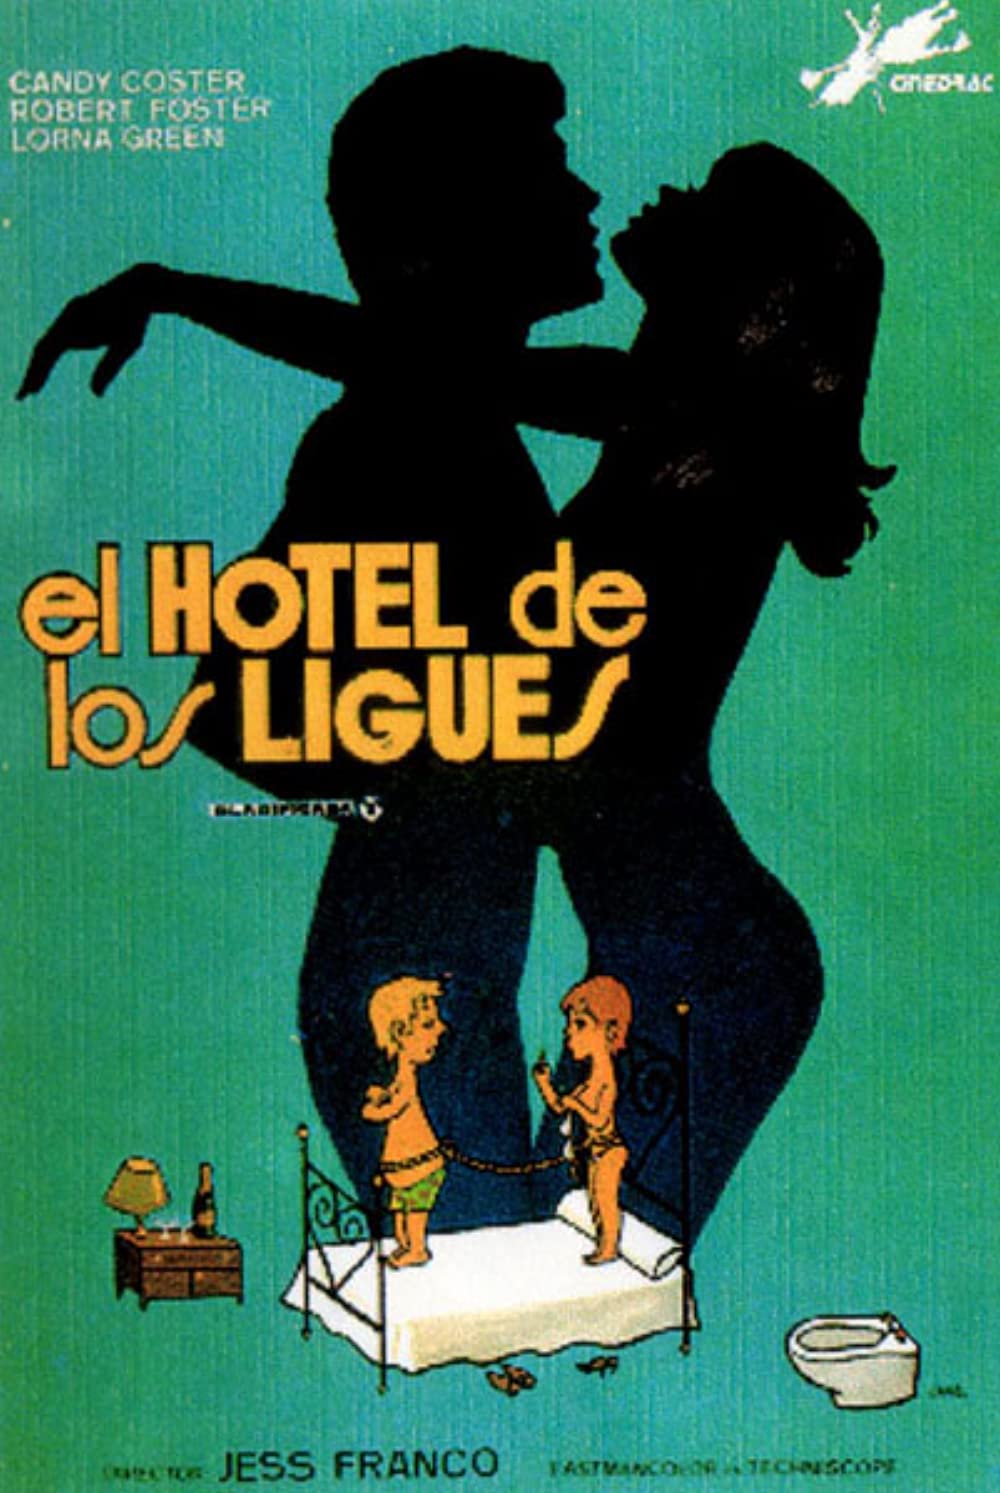 El Hotel De Los Ligues (1983) - Original Poster - vintagepornfun.com